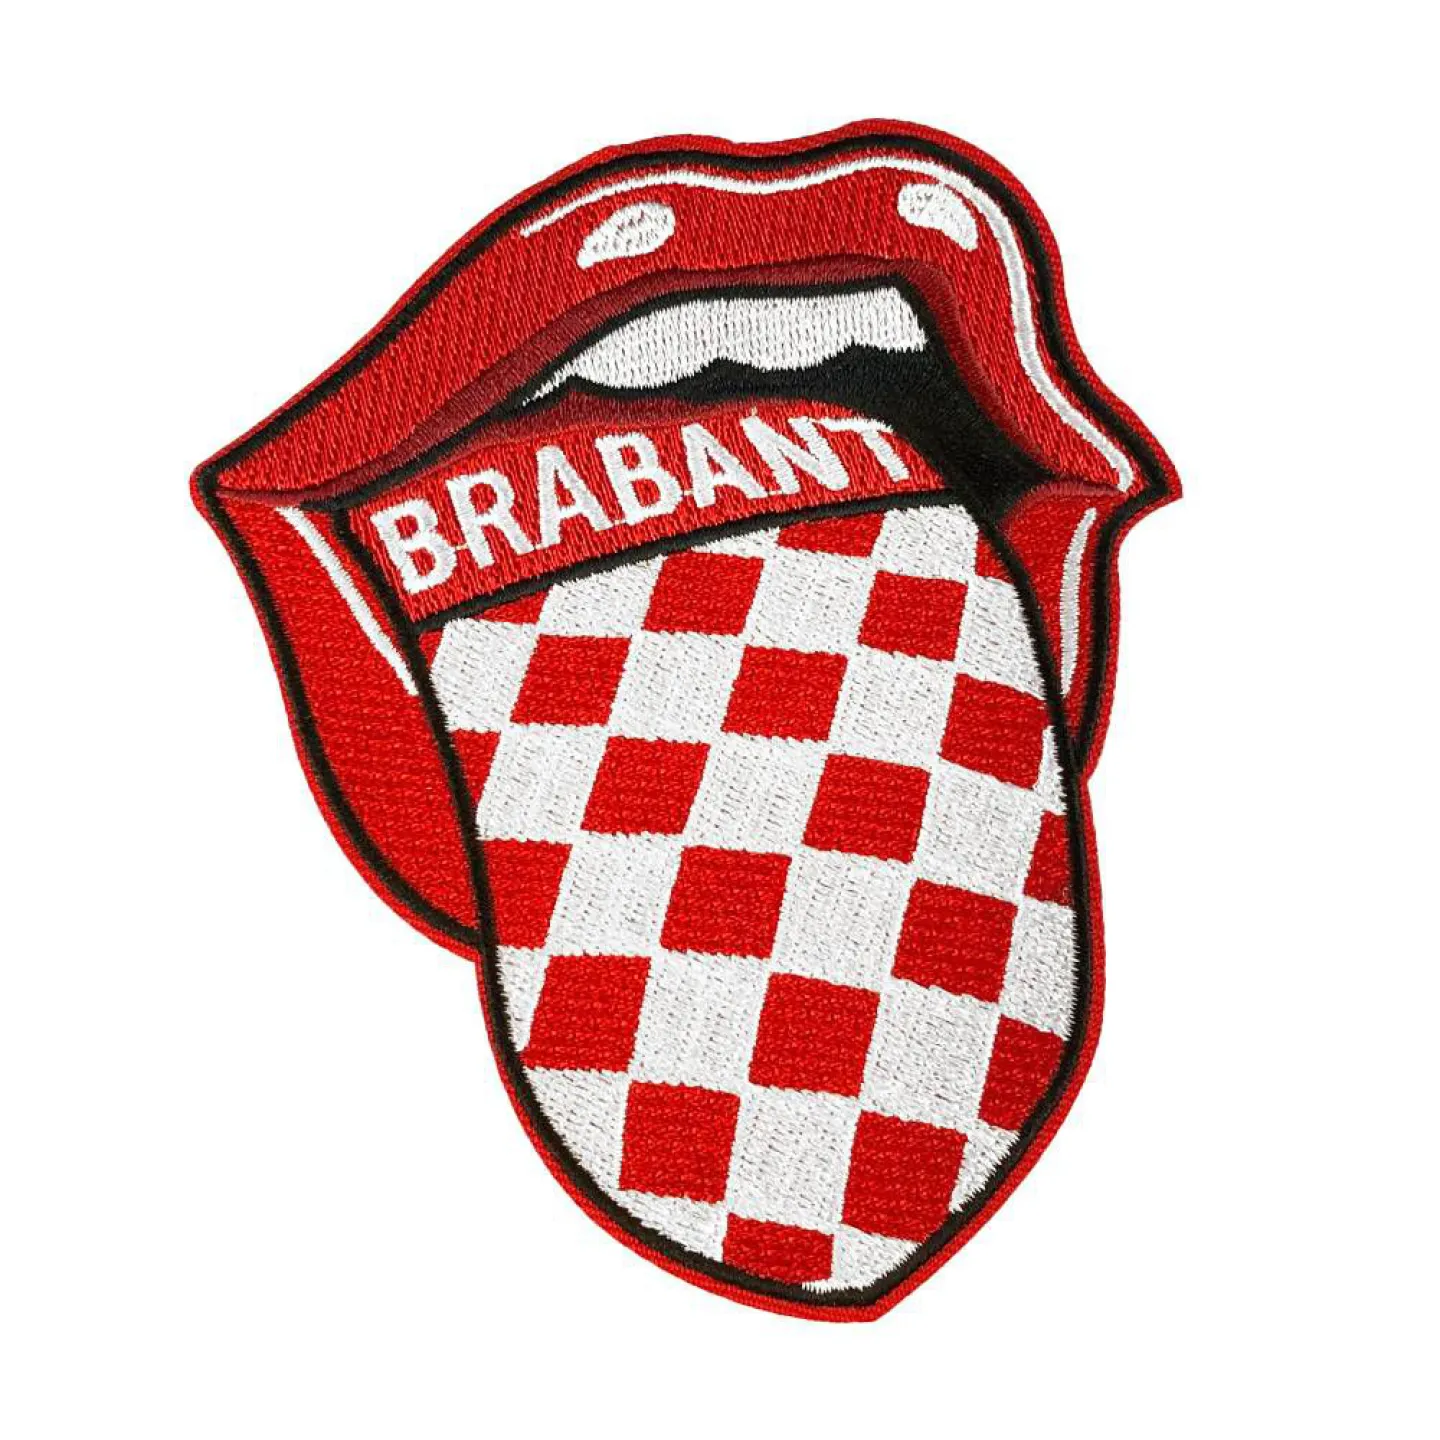 Goedkope Brabant emblemen kopen.